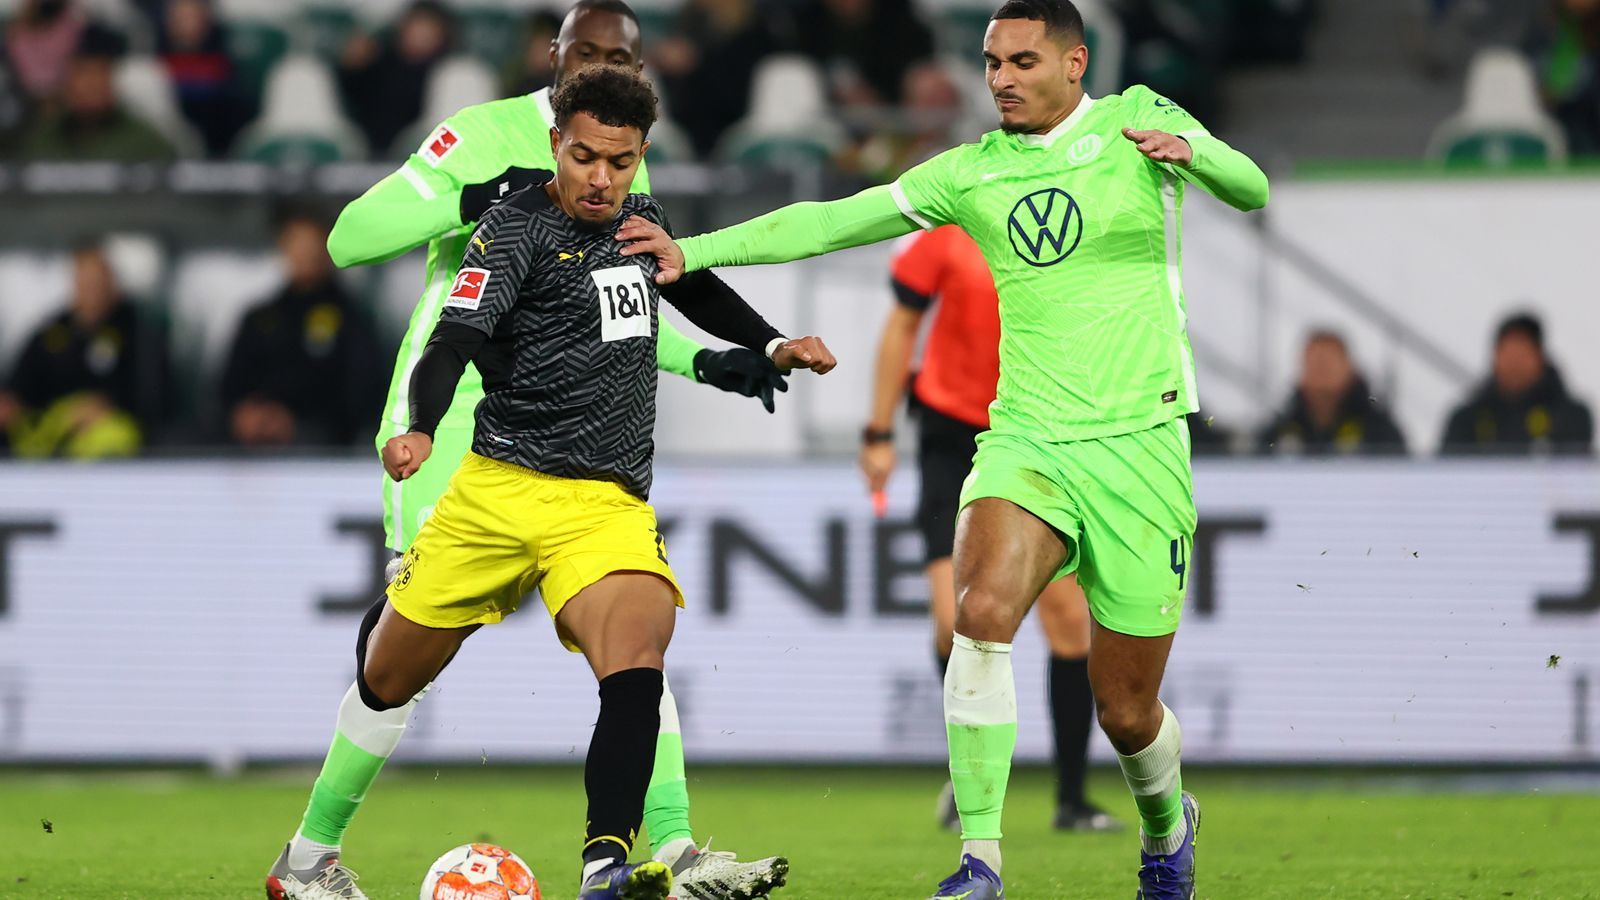 
                <strong>Die BVB-Stars in der Einzelkritik</strong><br>
                Drei Punkte auswärts in Wolfsburg geholt, dazu das Comeback von Erling Haaland. Am Samstagnachmittag lief es rund für Borussia Dortmund. Wir haben die BVB-Stars in einer Einzelkritik benotet.
              